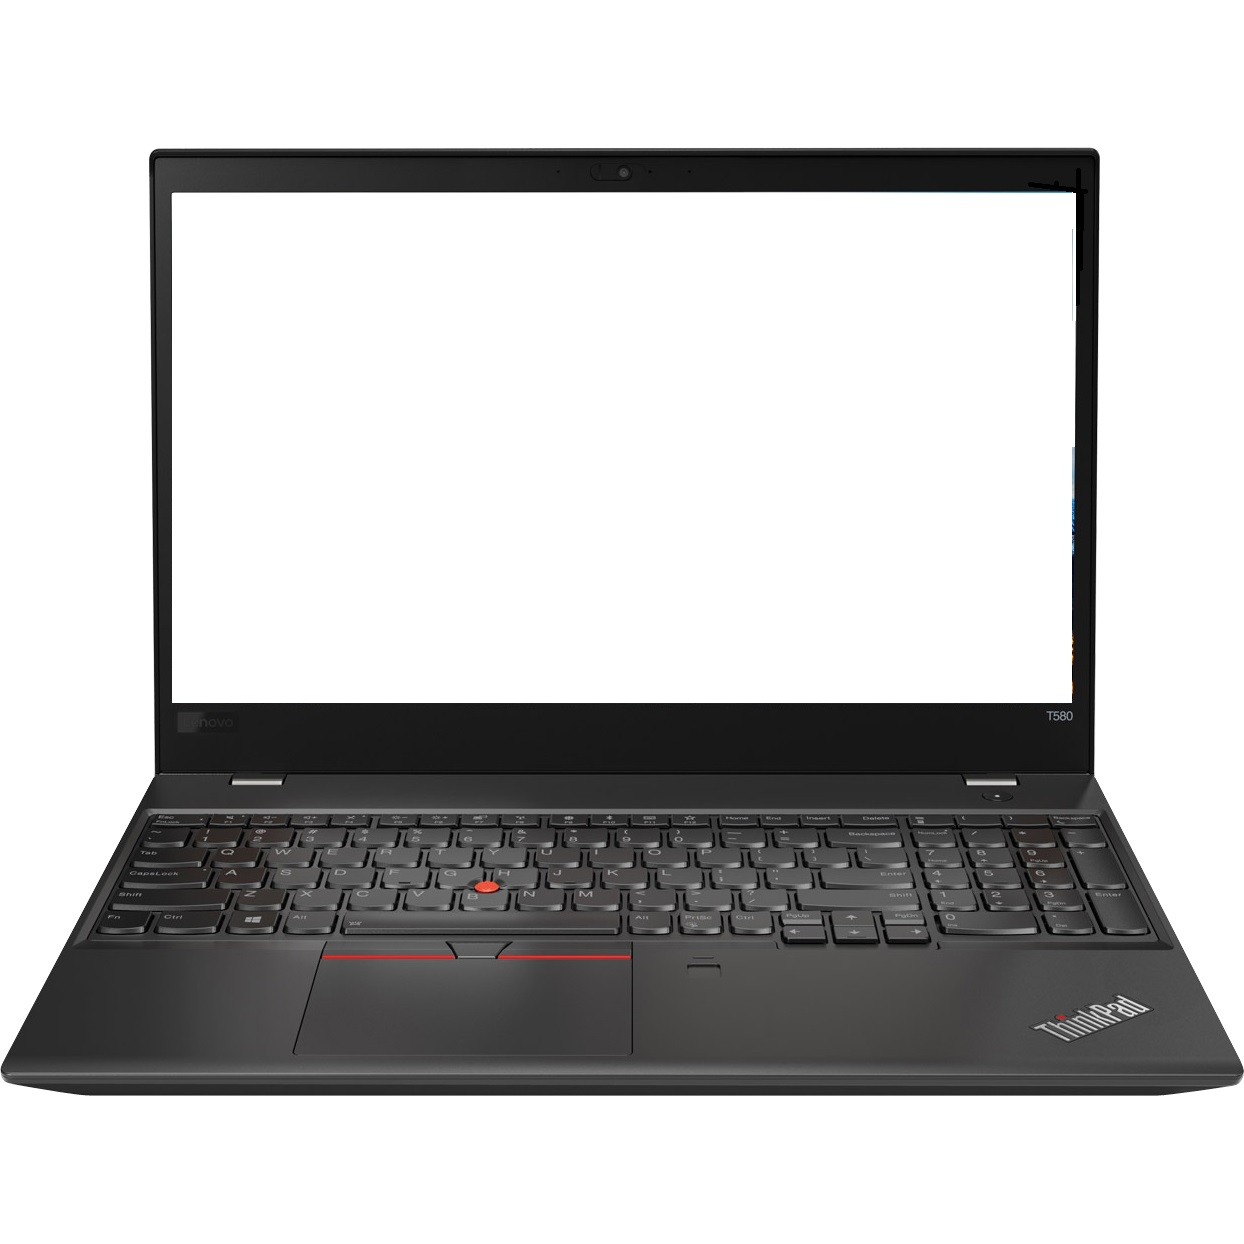 Lenovo ThinkPad T580 15.6" FHD i5-8250U 1.3GHz 8GB 500GB HDD W10P 20L9001VUS R